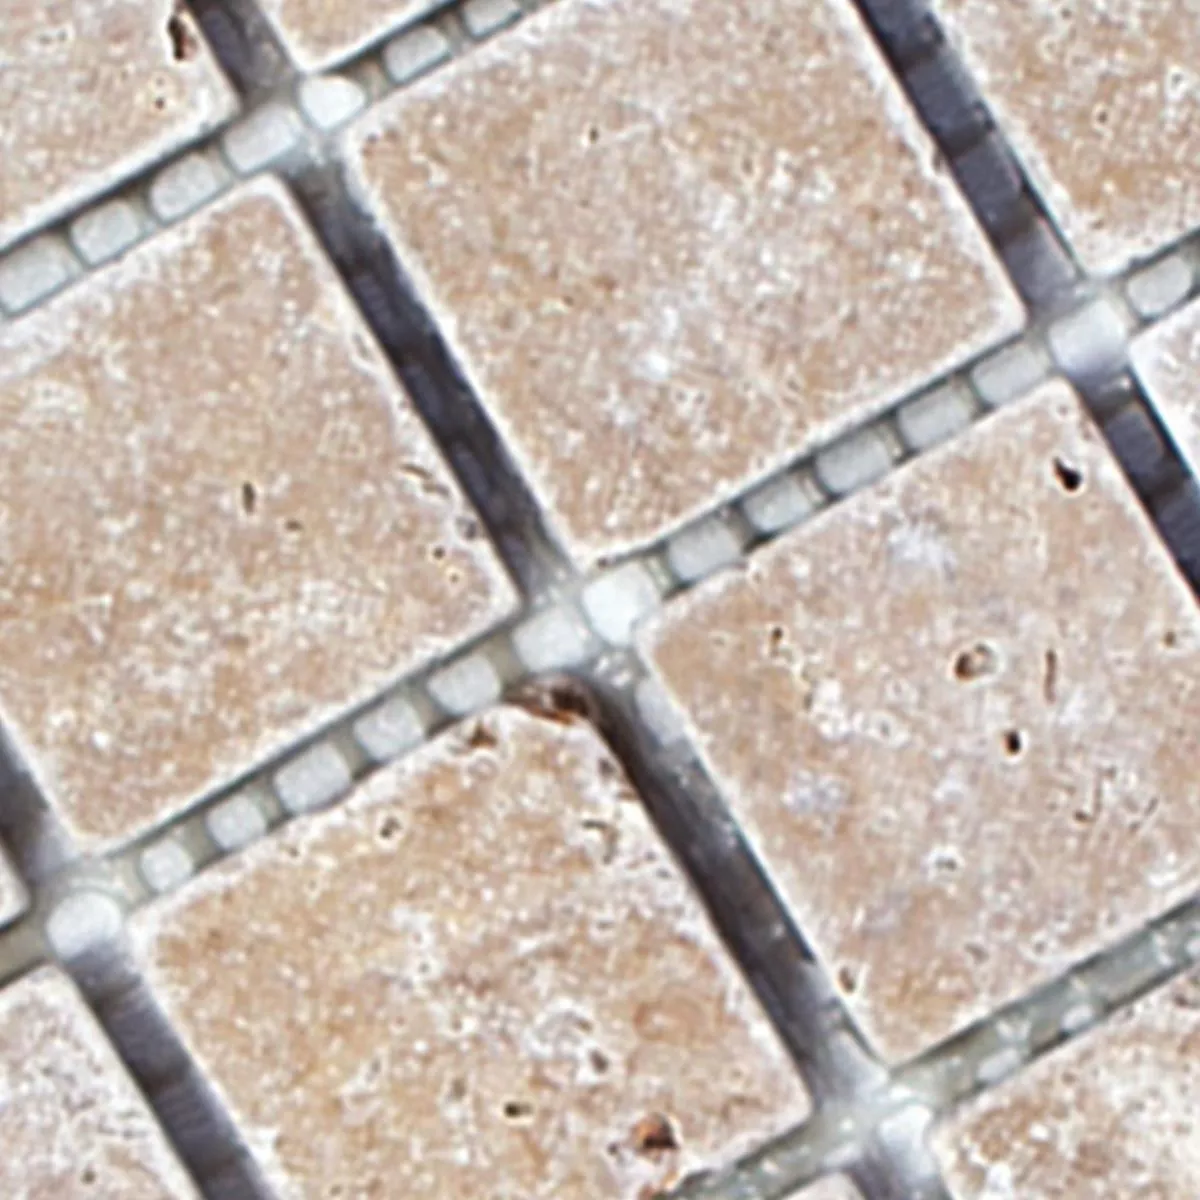 Sample Mosaic Tiles Travertine Patara Noce 23